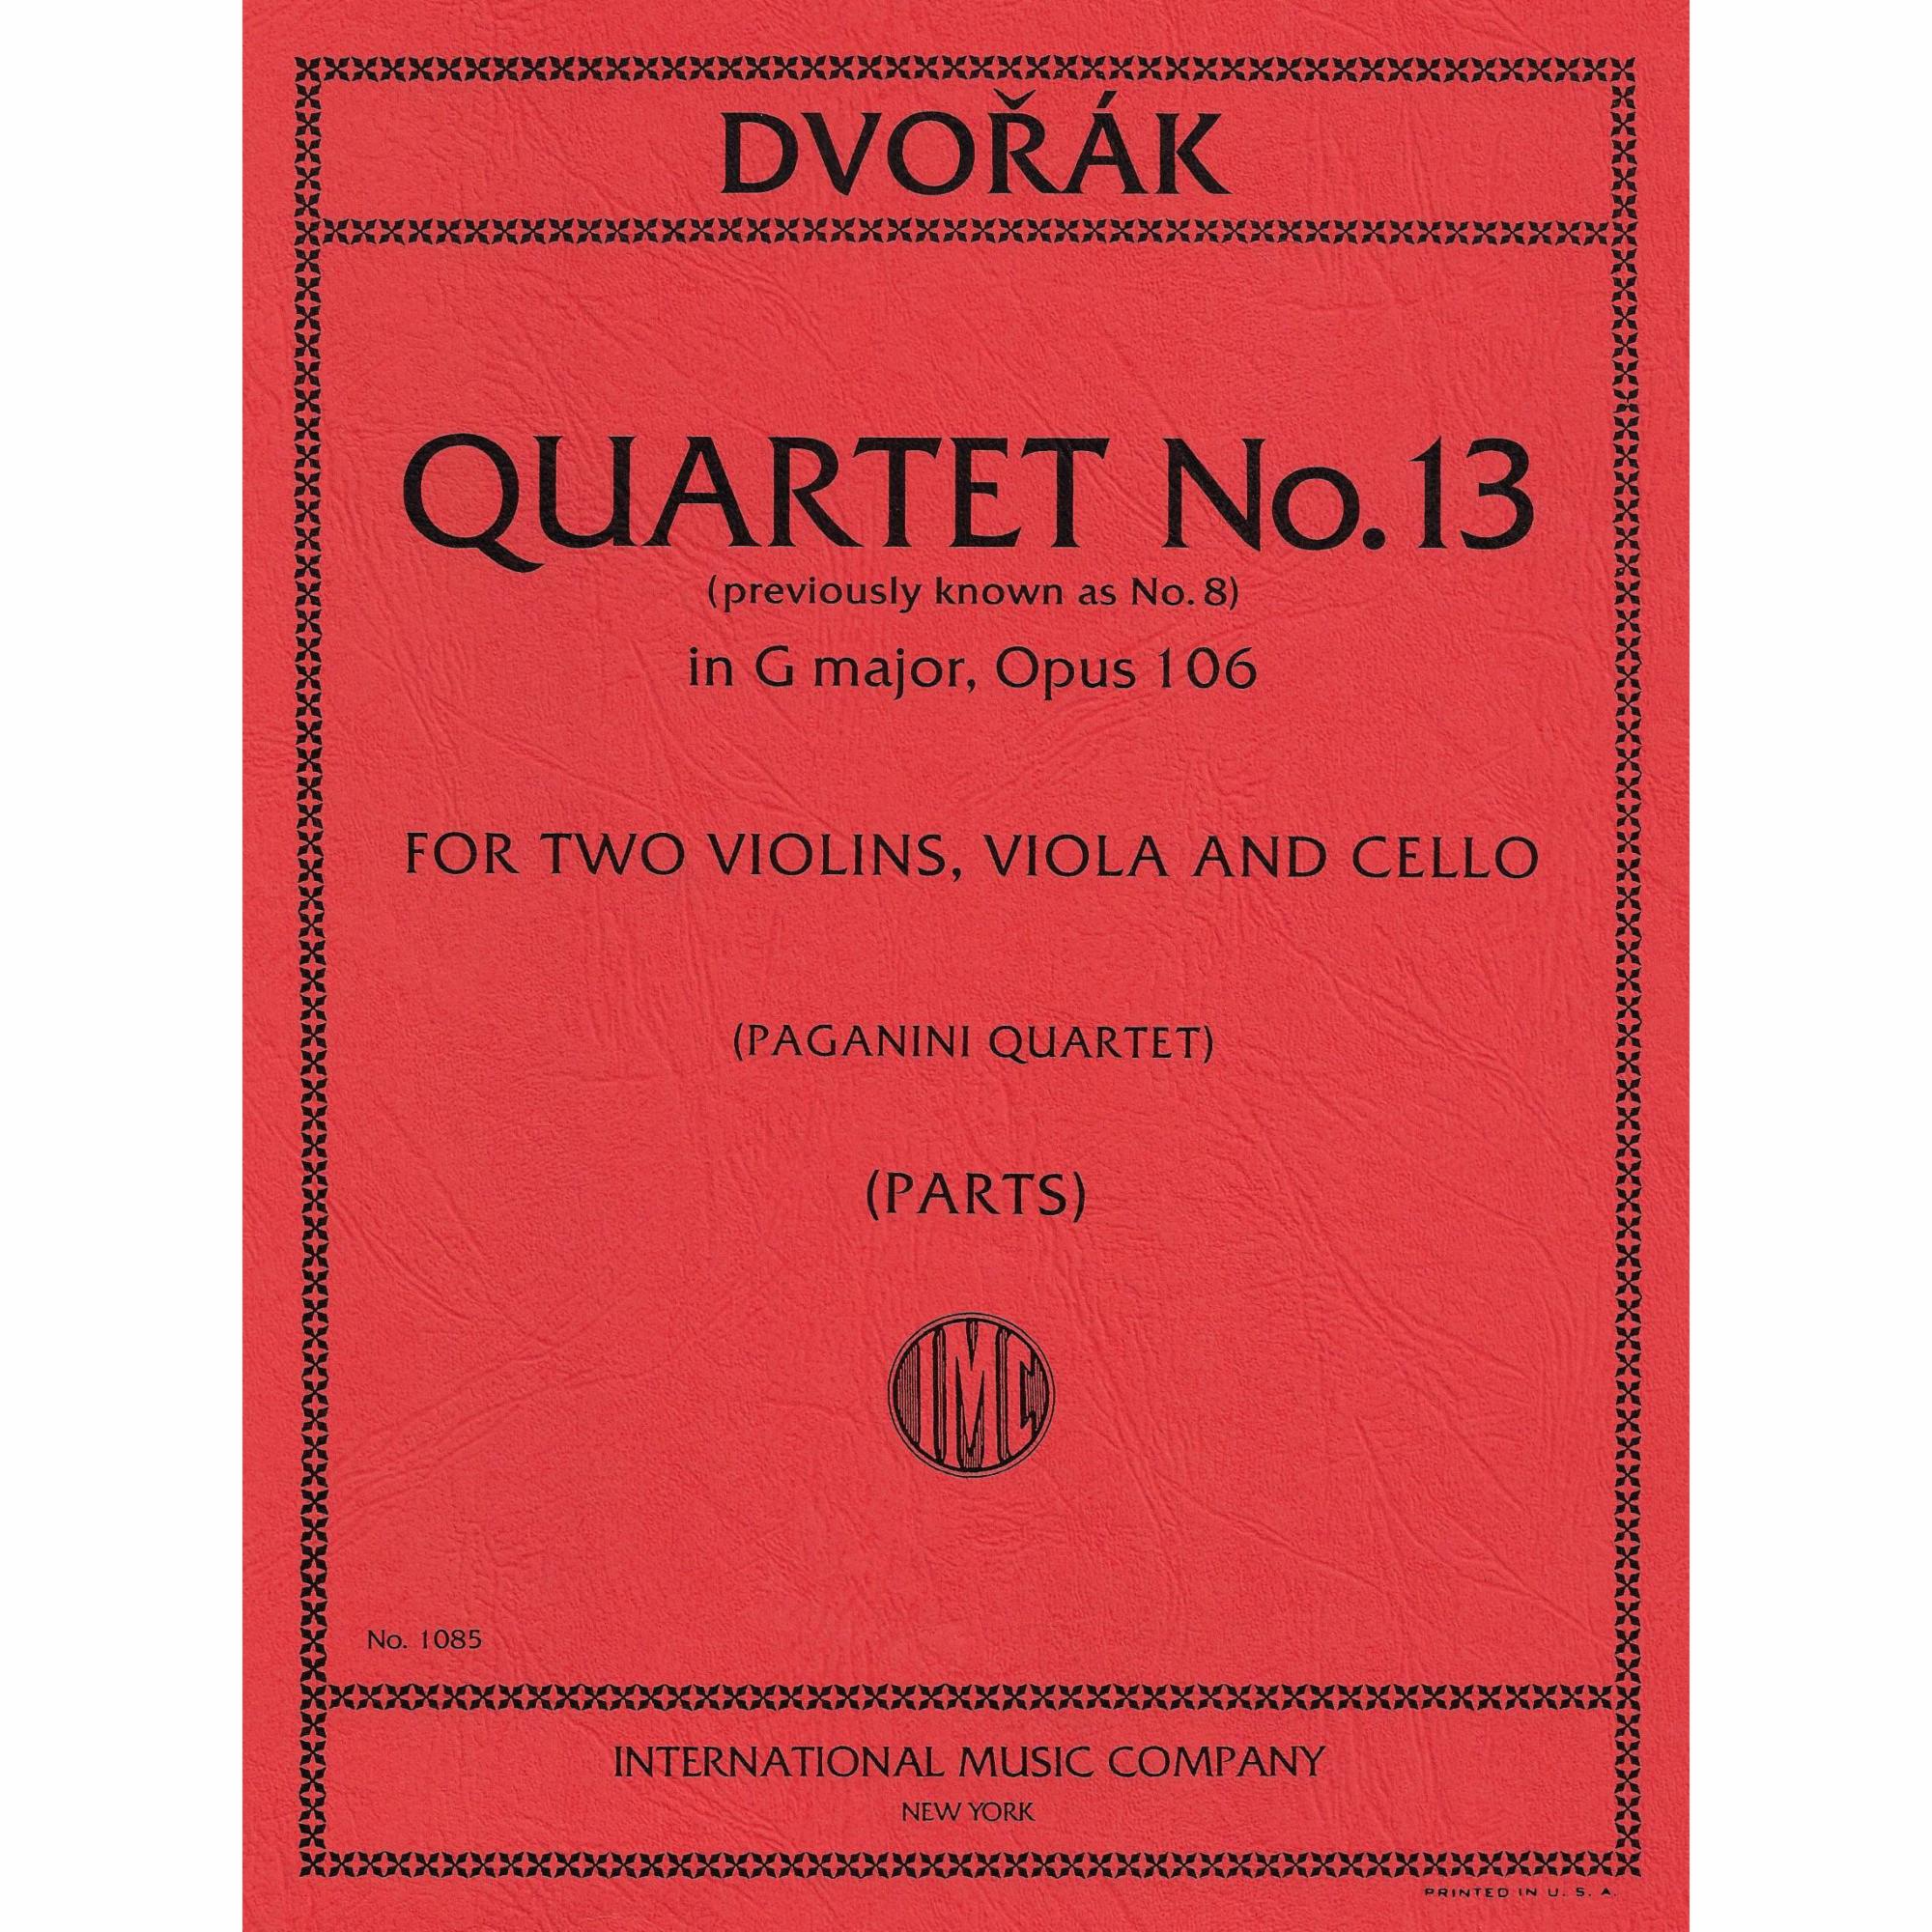 Dvorak -- String Quartet No. 13 in G Major, Op. 106